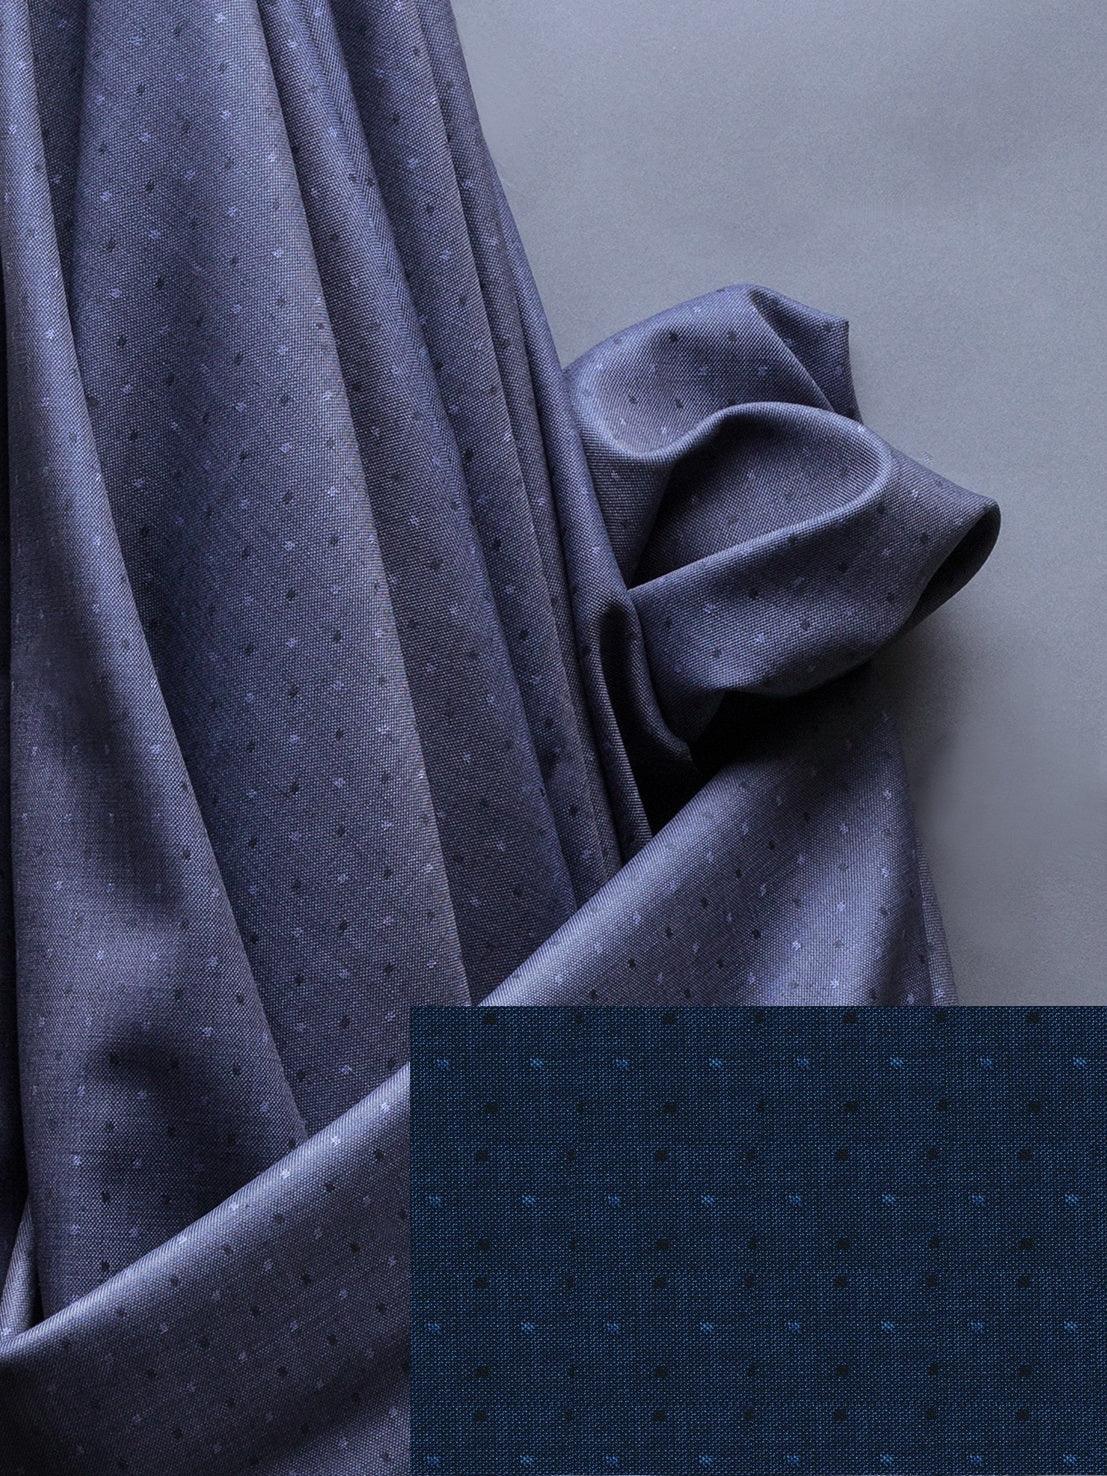 Arvind Men's Cotton Denim Unstitched Stretchable Jeans Fabric (Camel, 1.30  M)